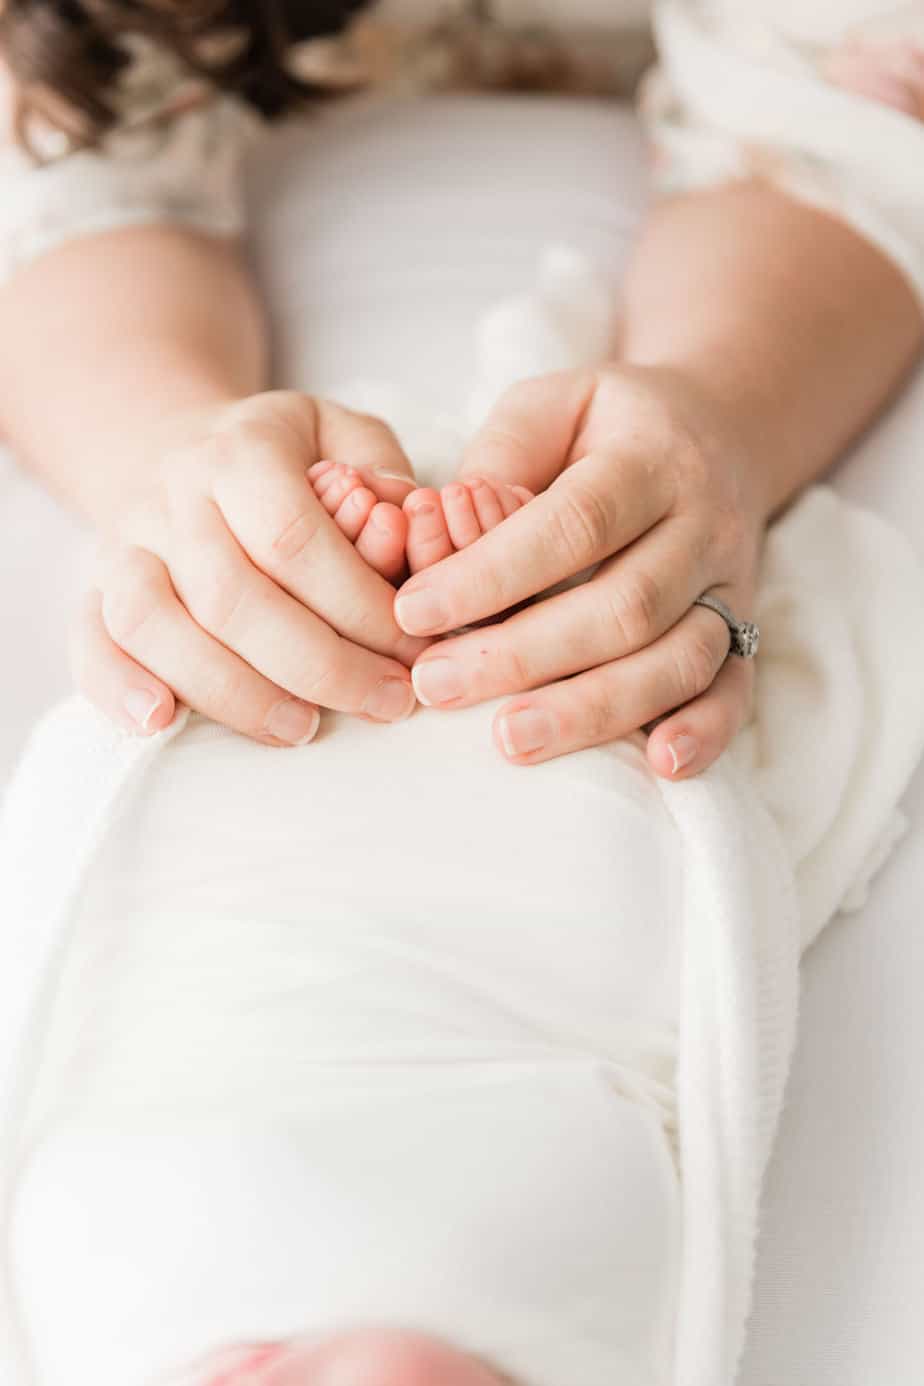 moms hands on newborns feet detail shot